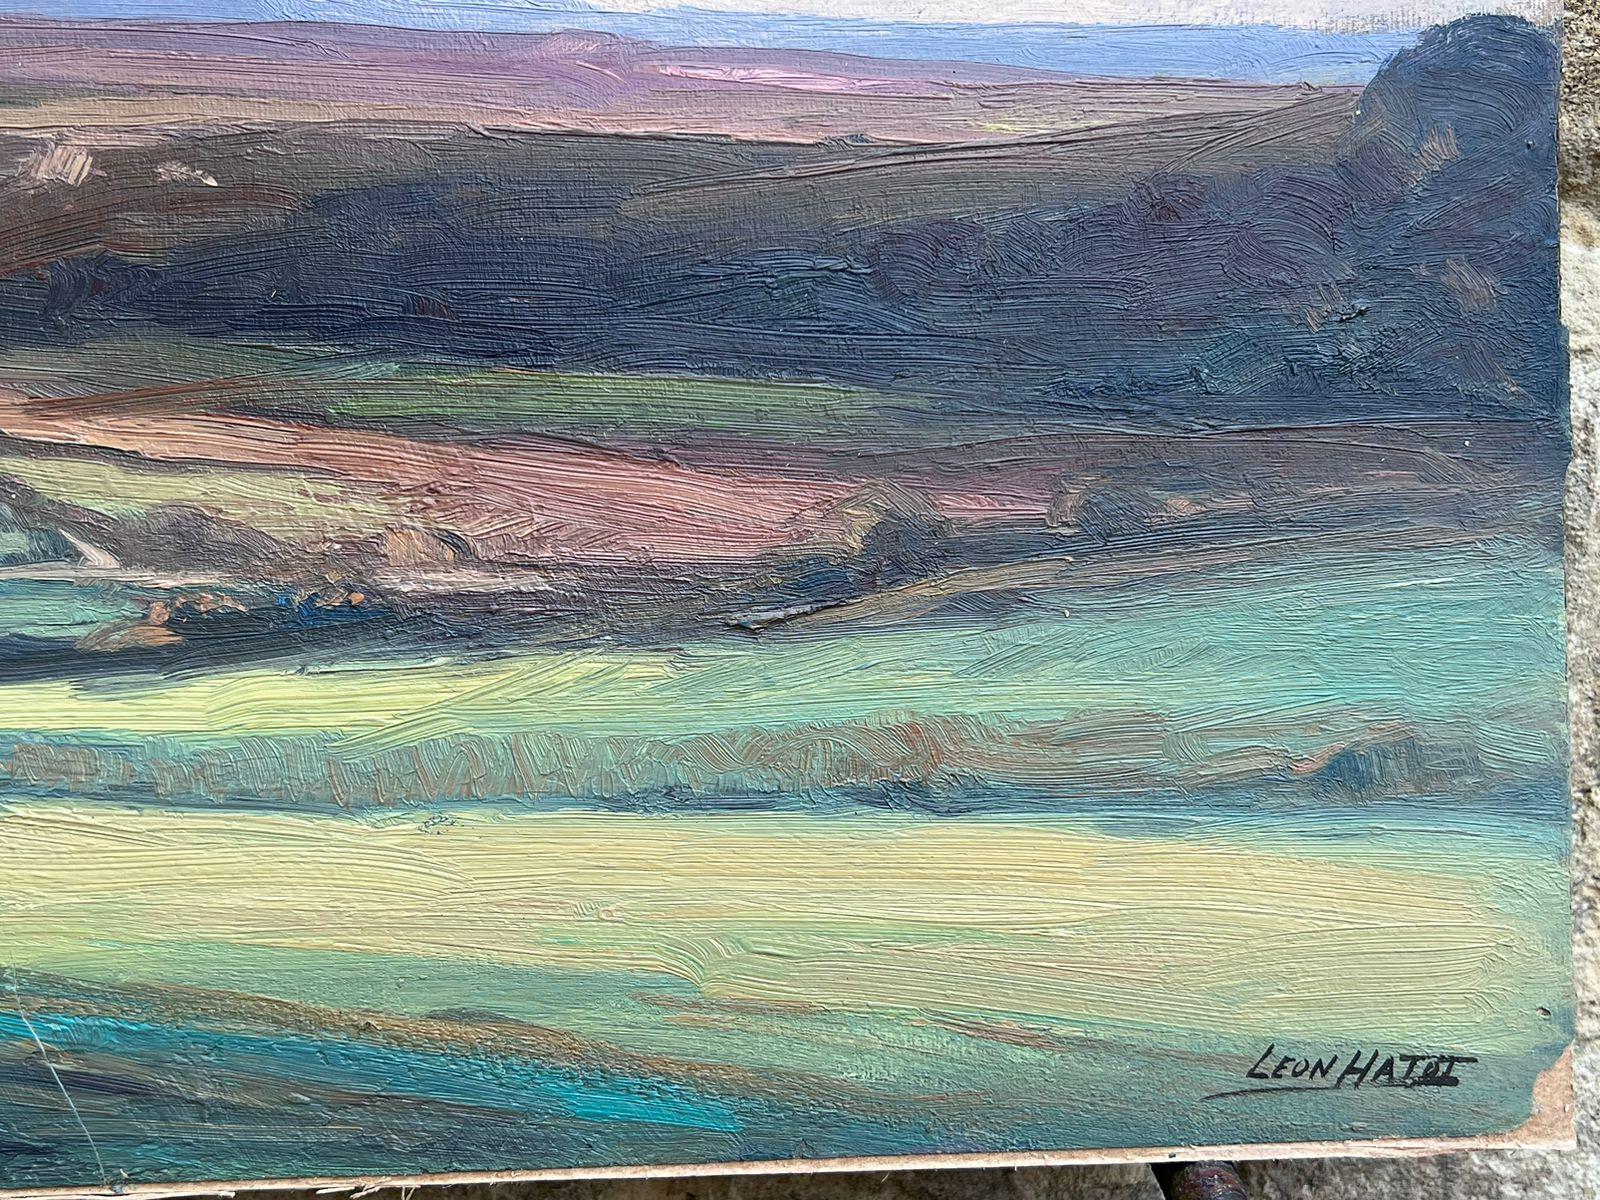 Peinture à l'huile française d'époque, paysage de colline en couches vertes et brunes - Painting de Leon Hatot